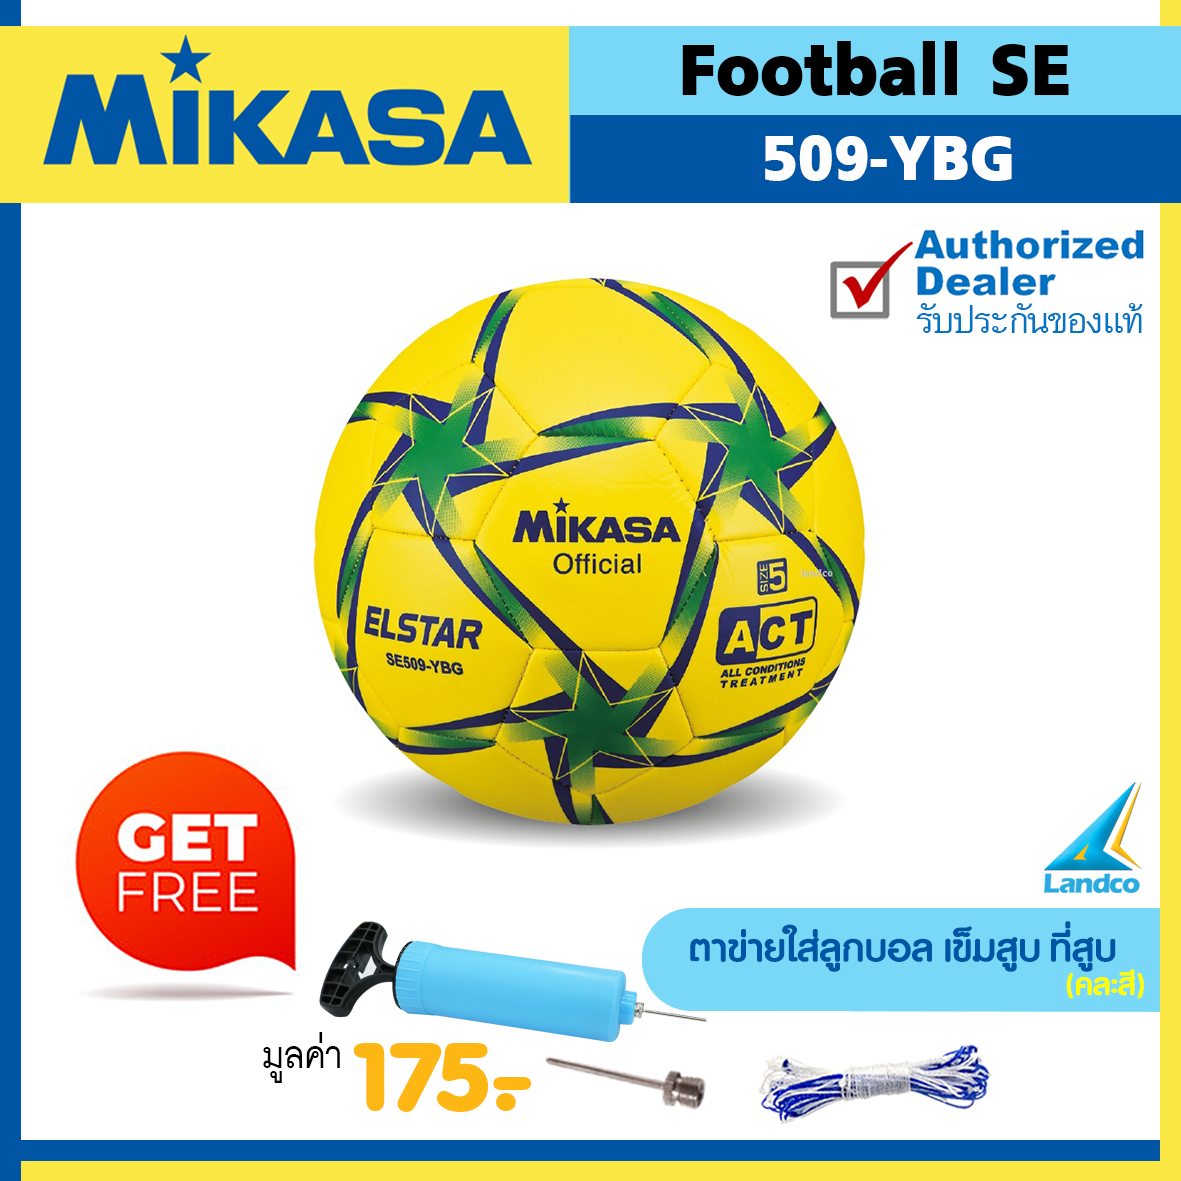 MIKASA ลูกฟุตบอลหนังเย็บ Football SE509 เบอร์ 5 (มี 5 สี) (แถมฟรี ตาข่ายใส่ลูกบอล + เข็มสูบ + สูบลมมือ SPL)